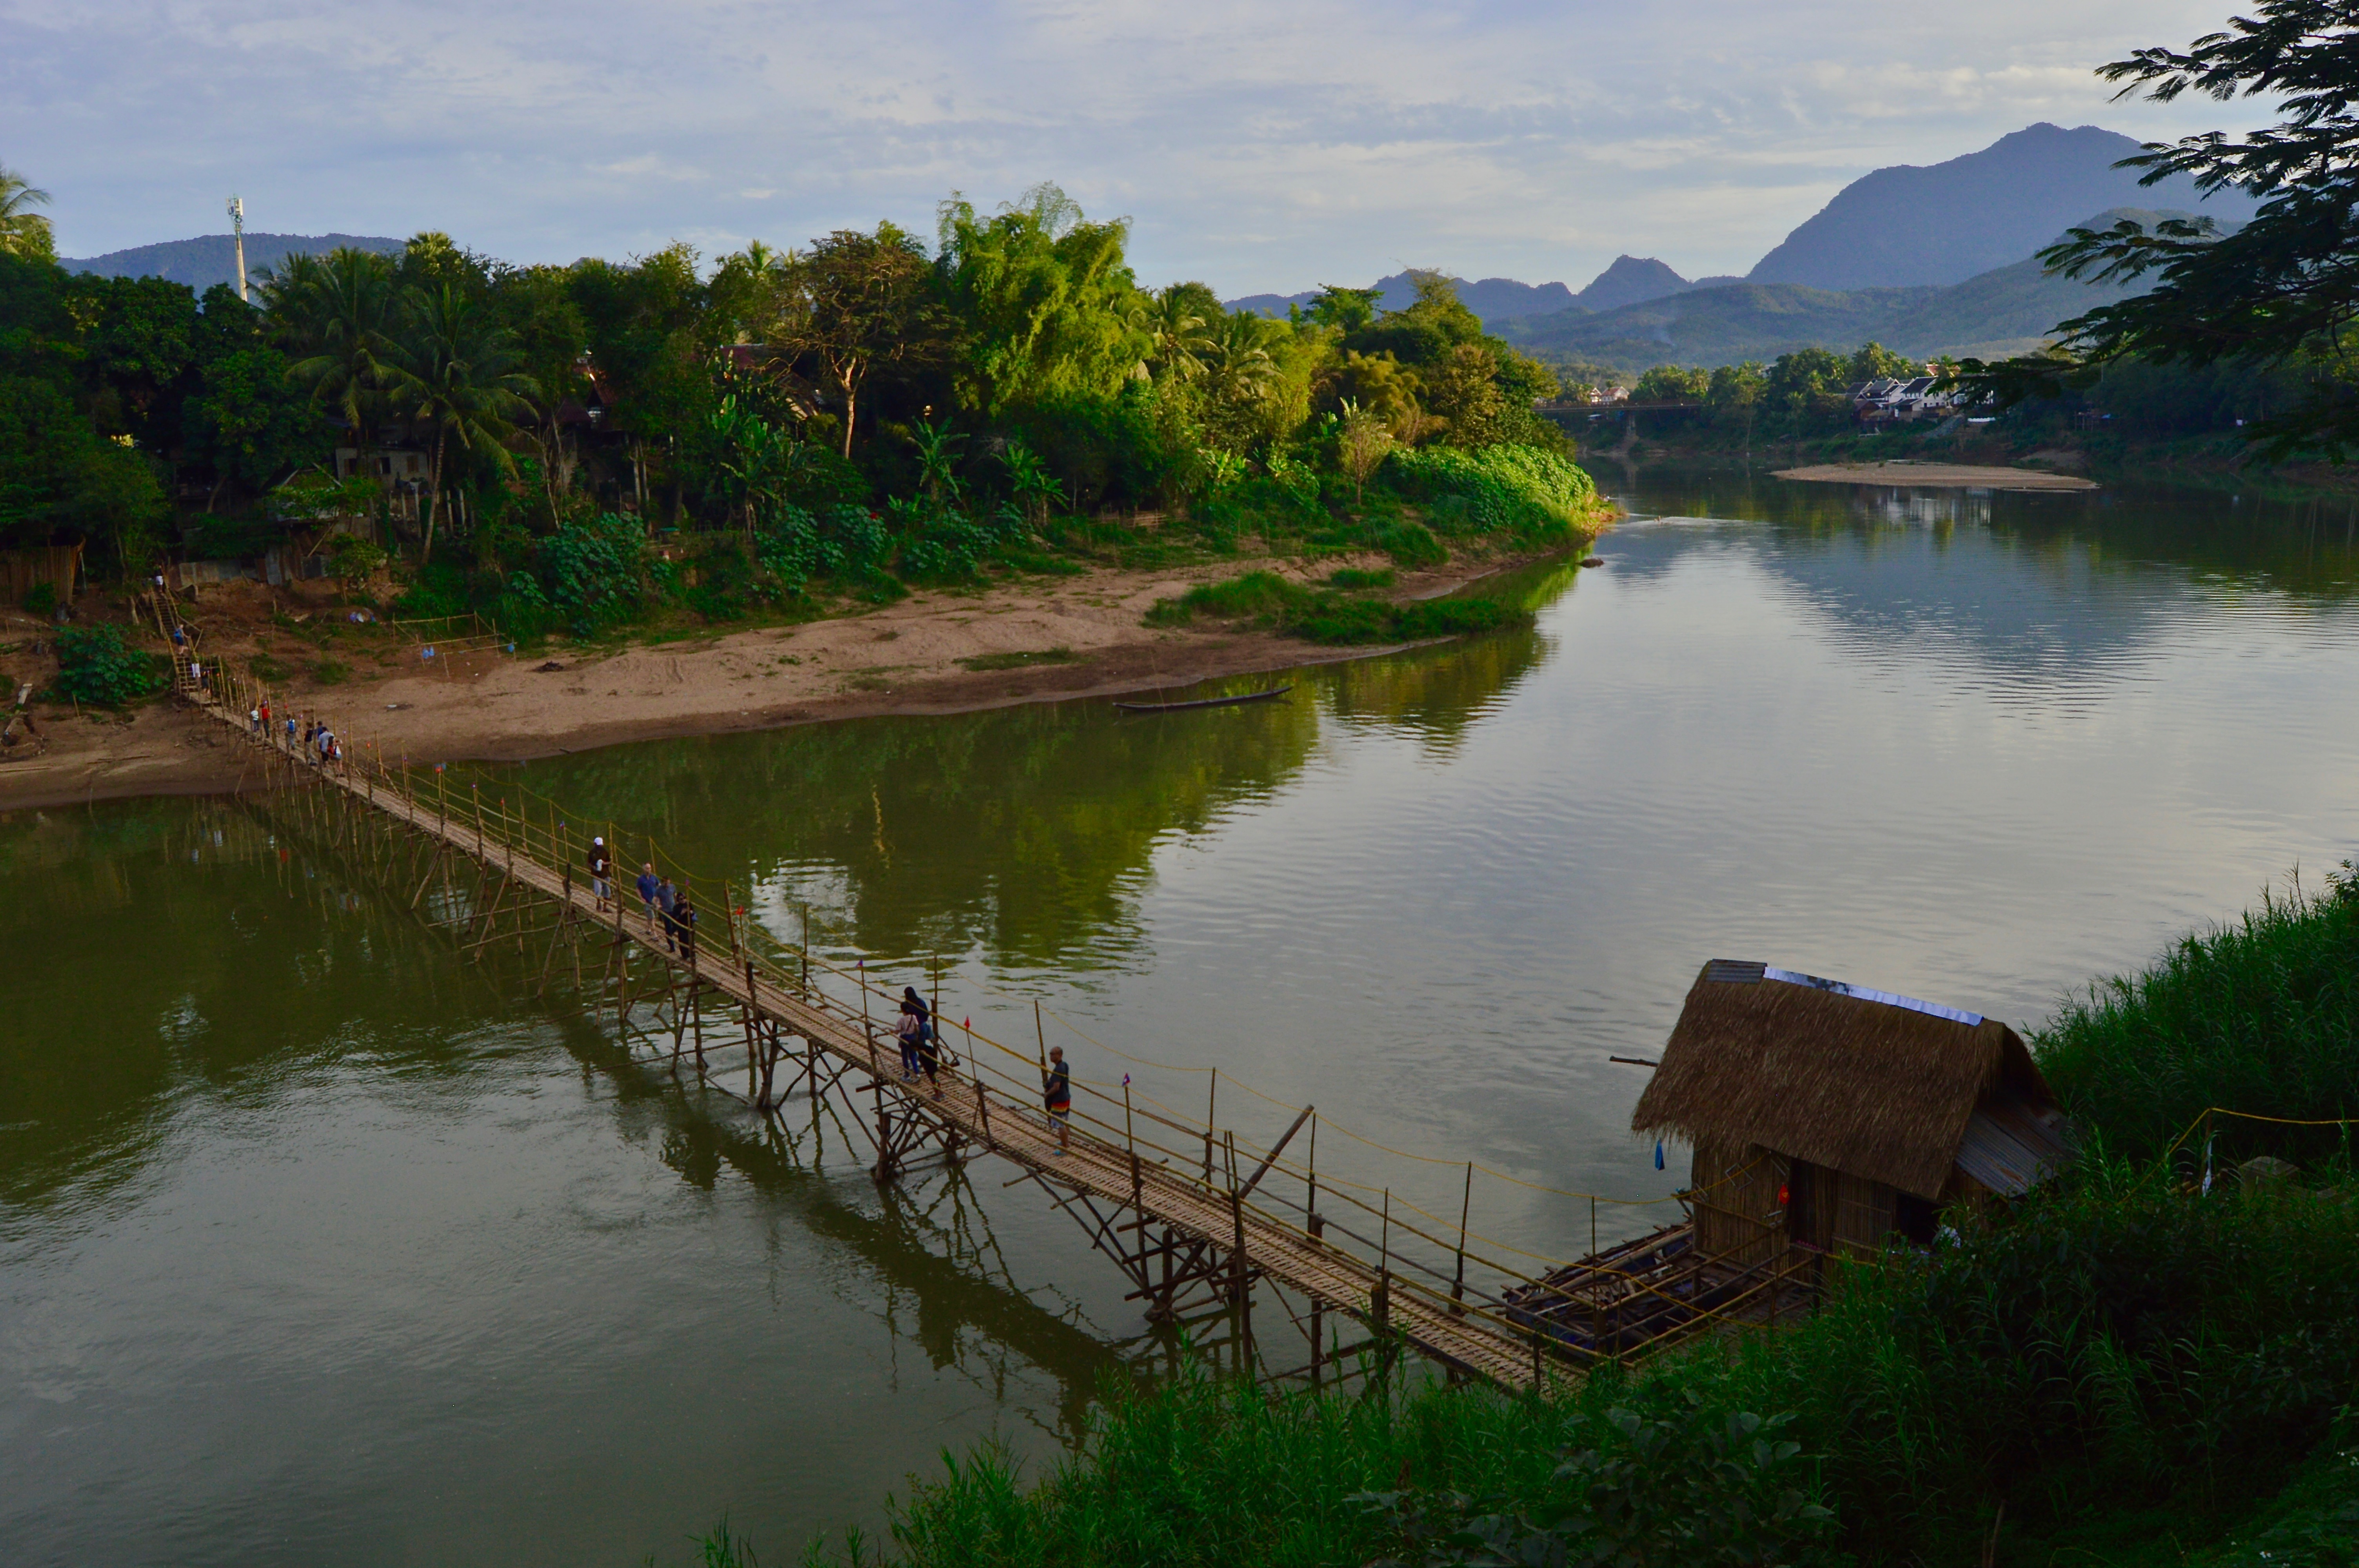 A Photo Journey Through Luang Prabang, Laos